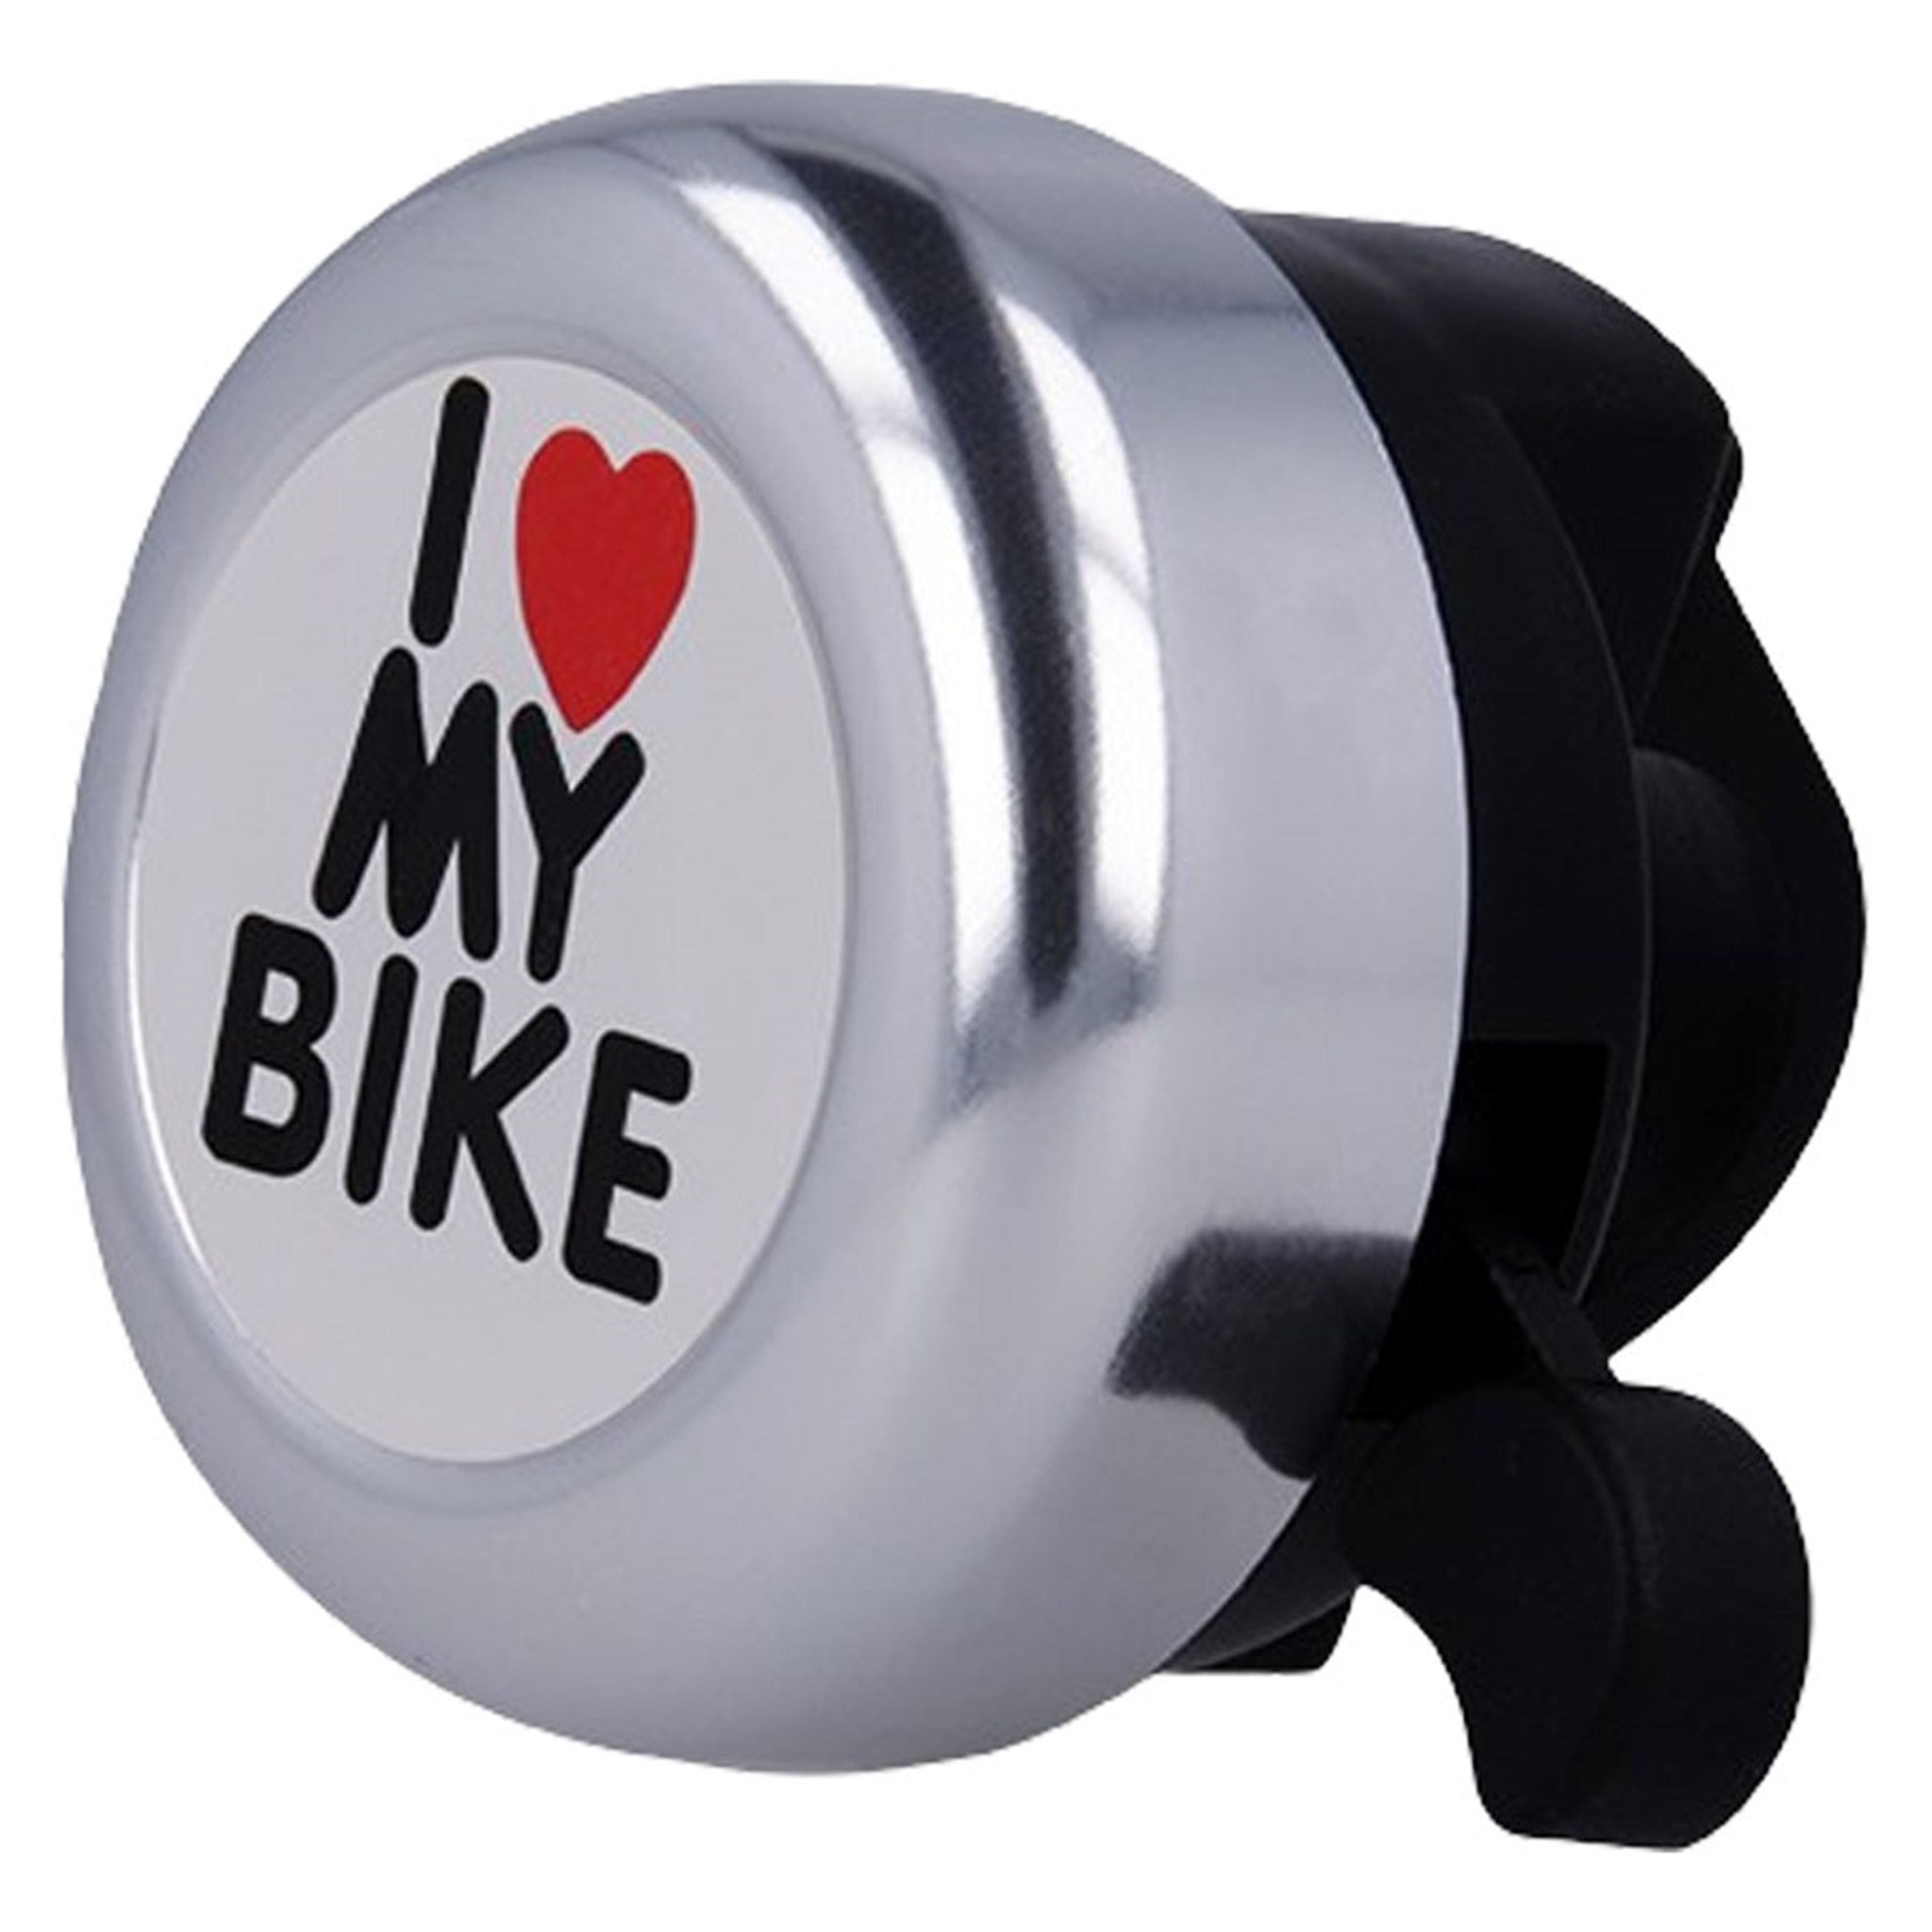 BIKE00025 Forever I Love My Bike Ringeklokken Til Cykel 02 2